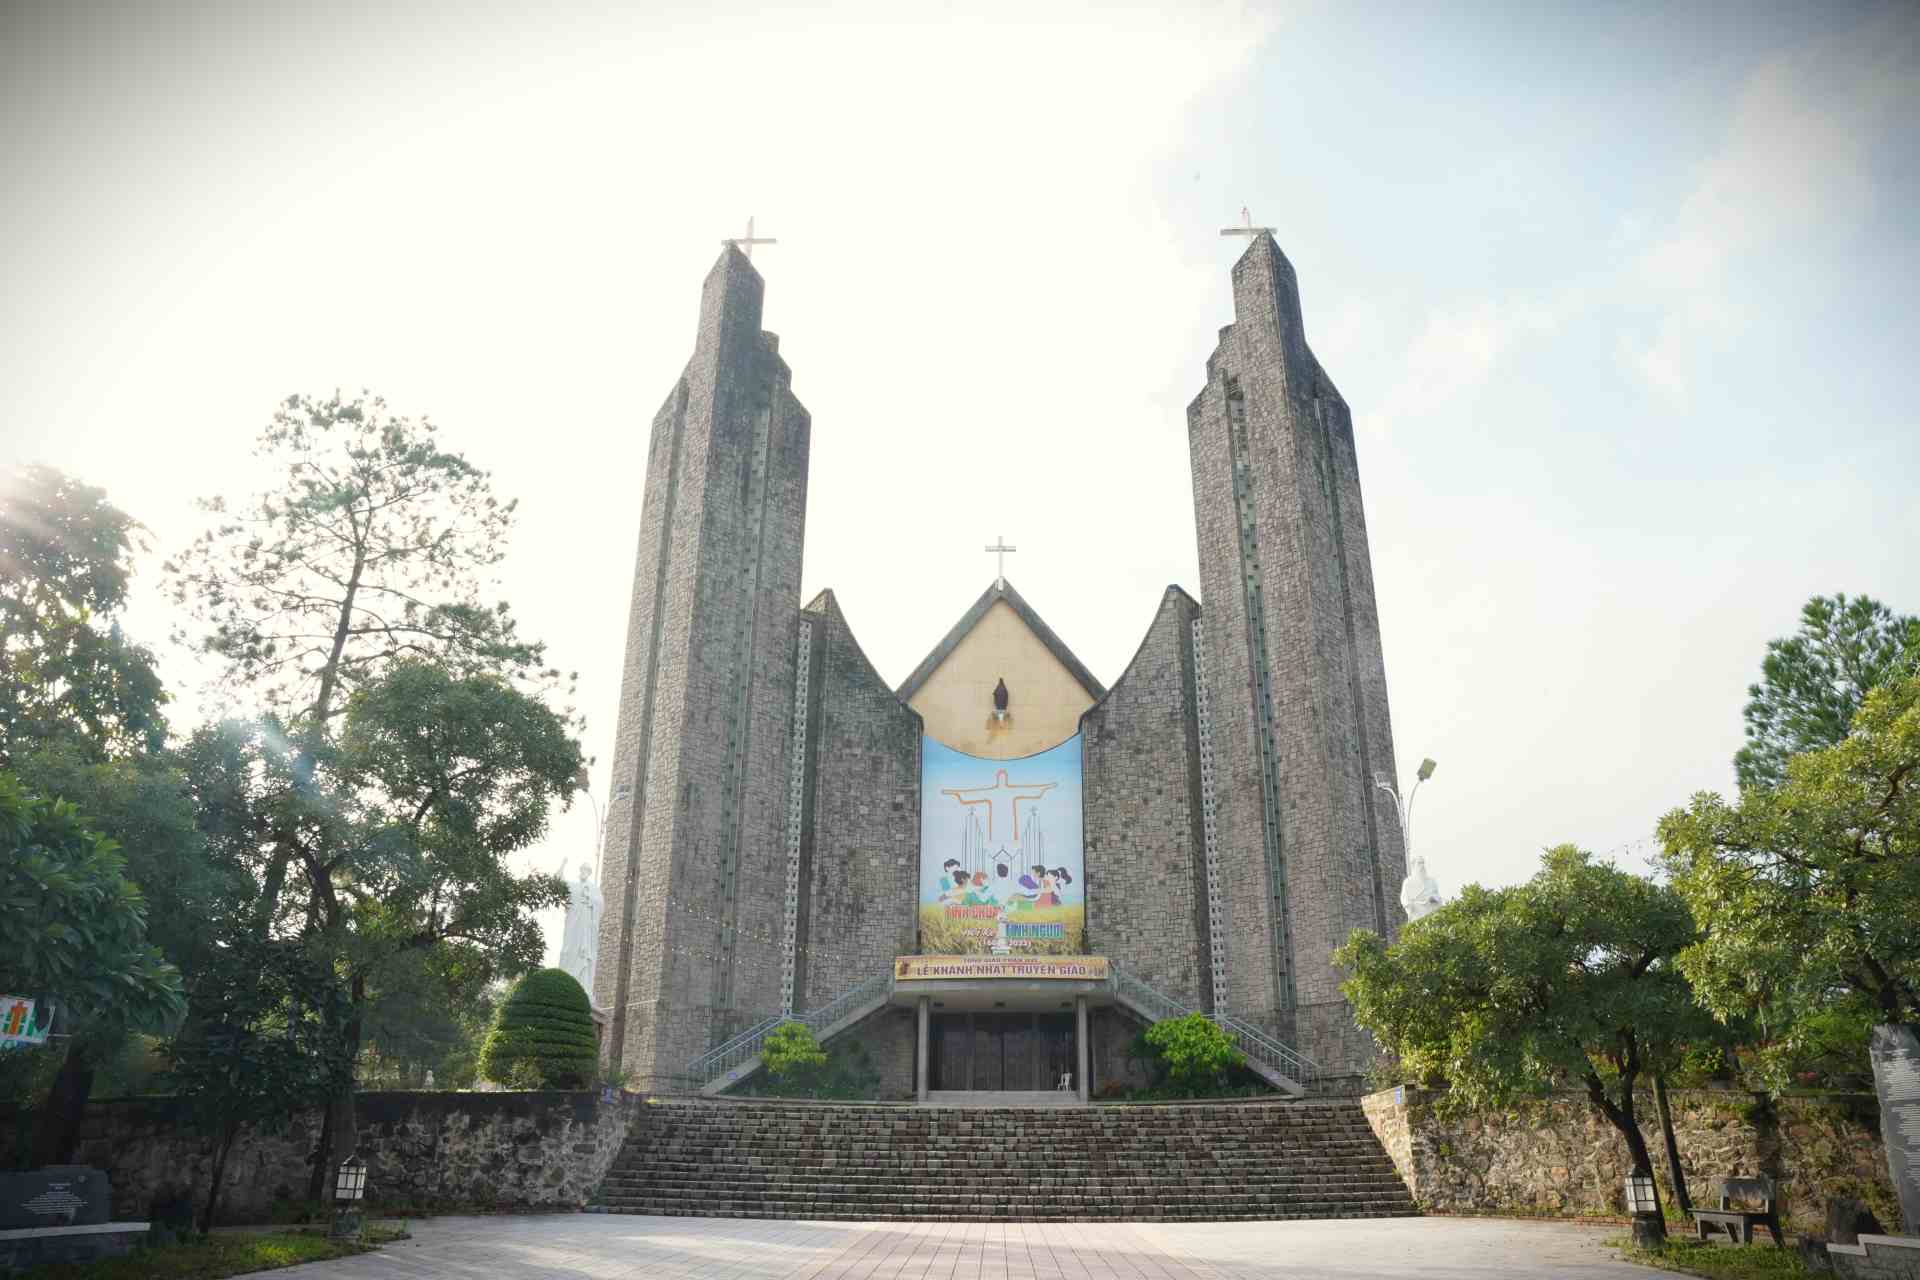 Nhà thờ Chính tòa Phủ Cam, với lịch sử hàng trăm năm hình thành và phát triển, đây là một trong những thánh đường rộng lớn, đồ sộ và lâu đời nhất bậc nhất tại Huế. Ảnh: Nguyễn Luân.